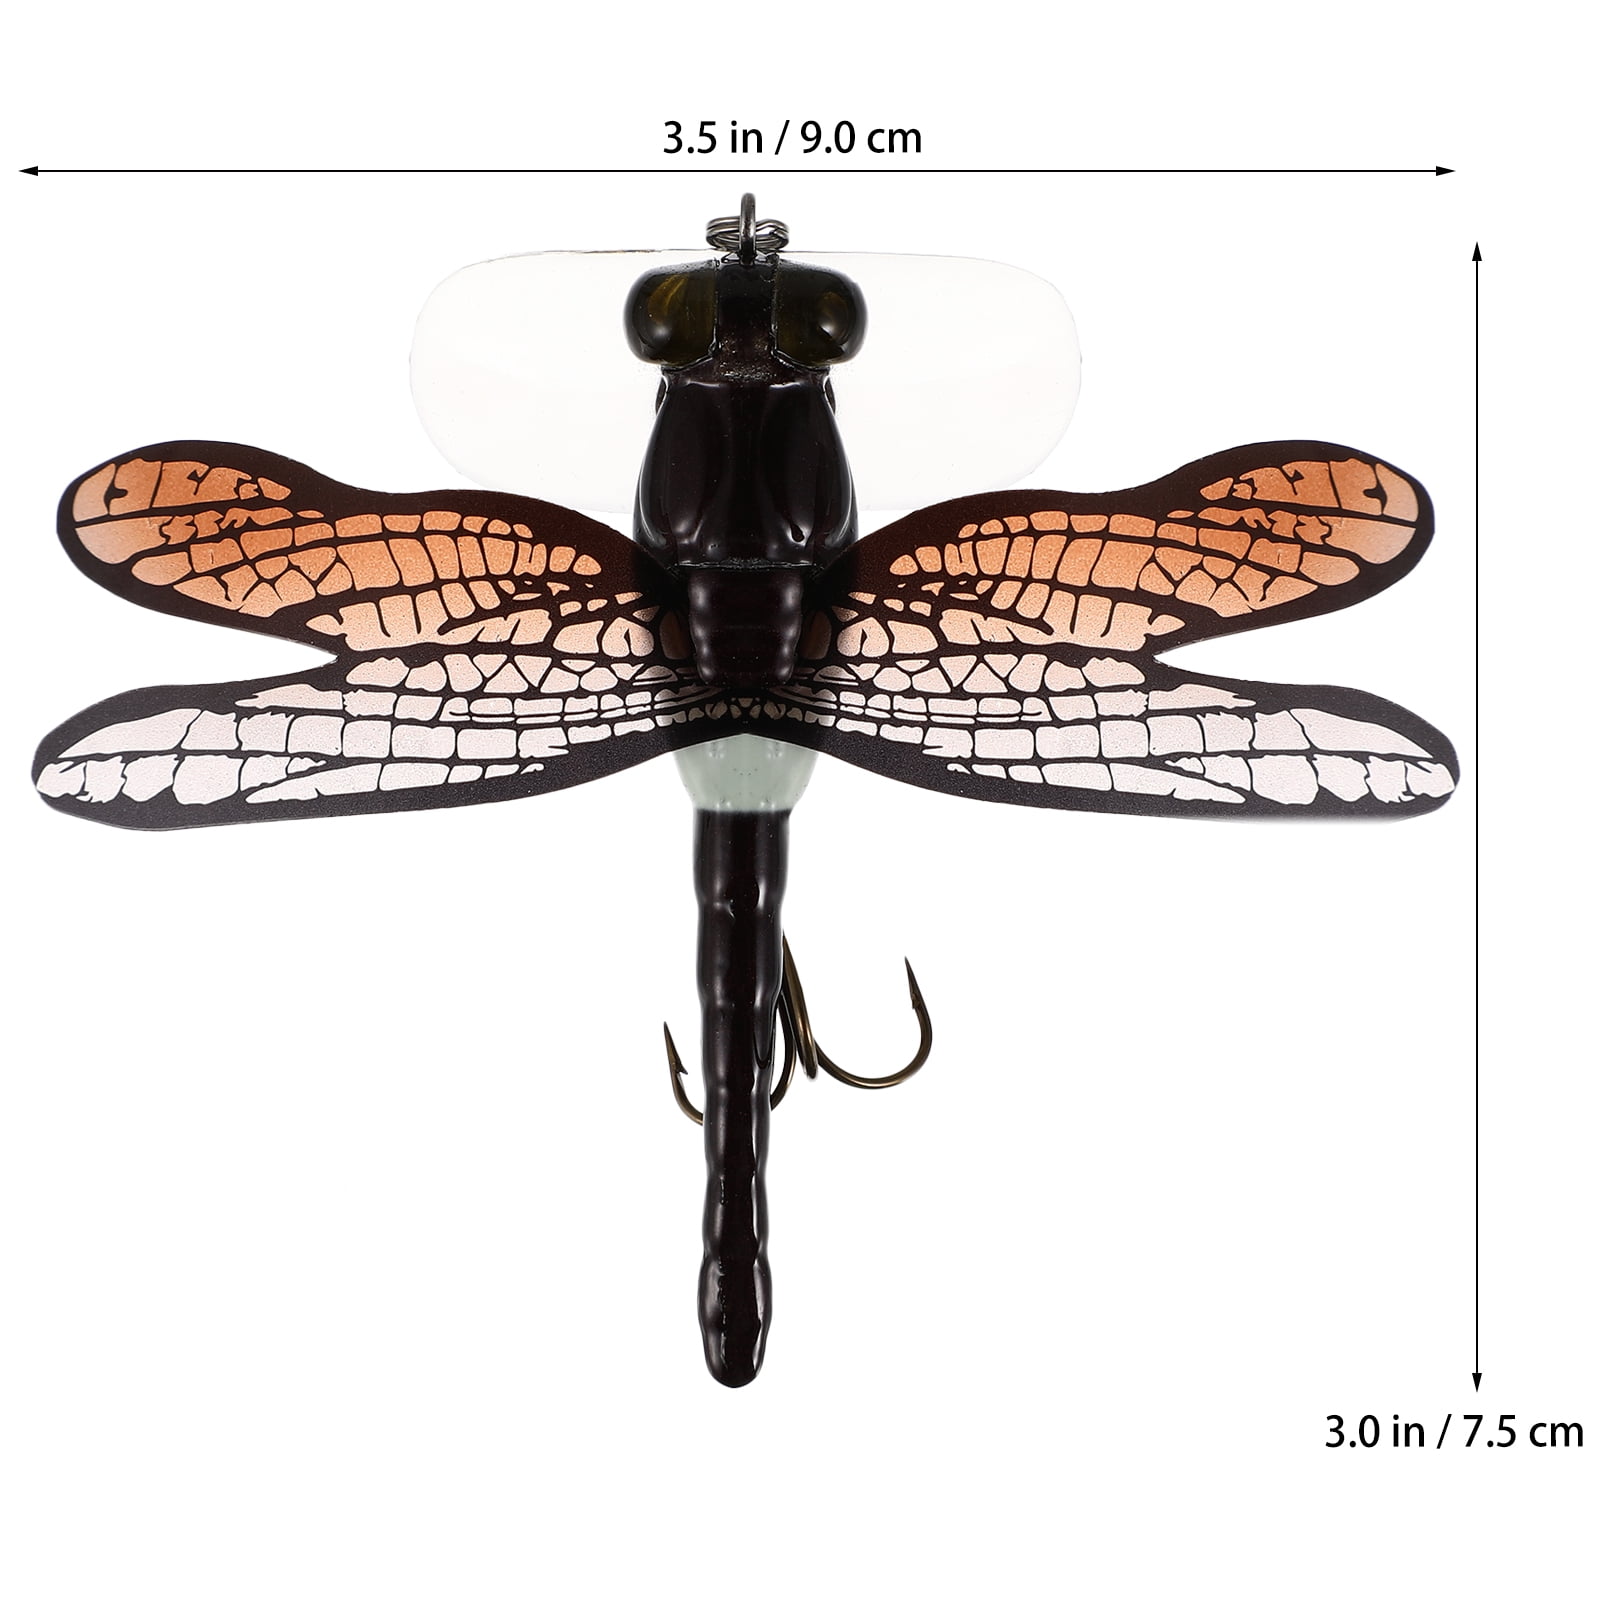 Fishing Bait Imitation Dragonfly Fishing Hook Simulation Lure